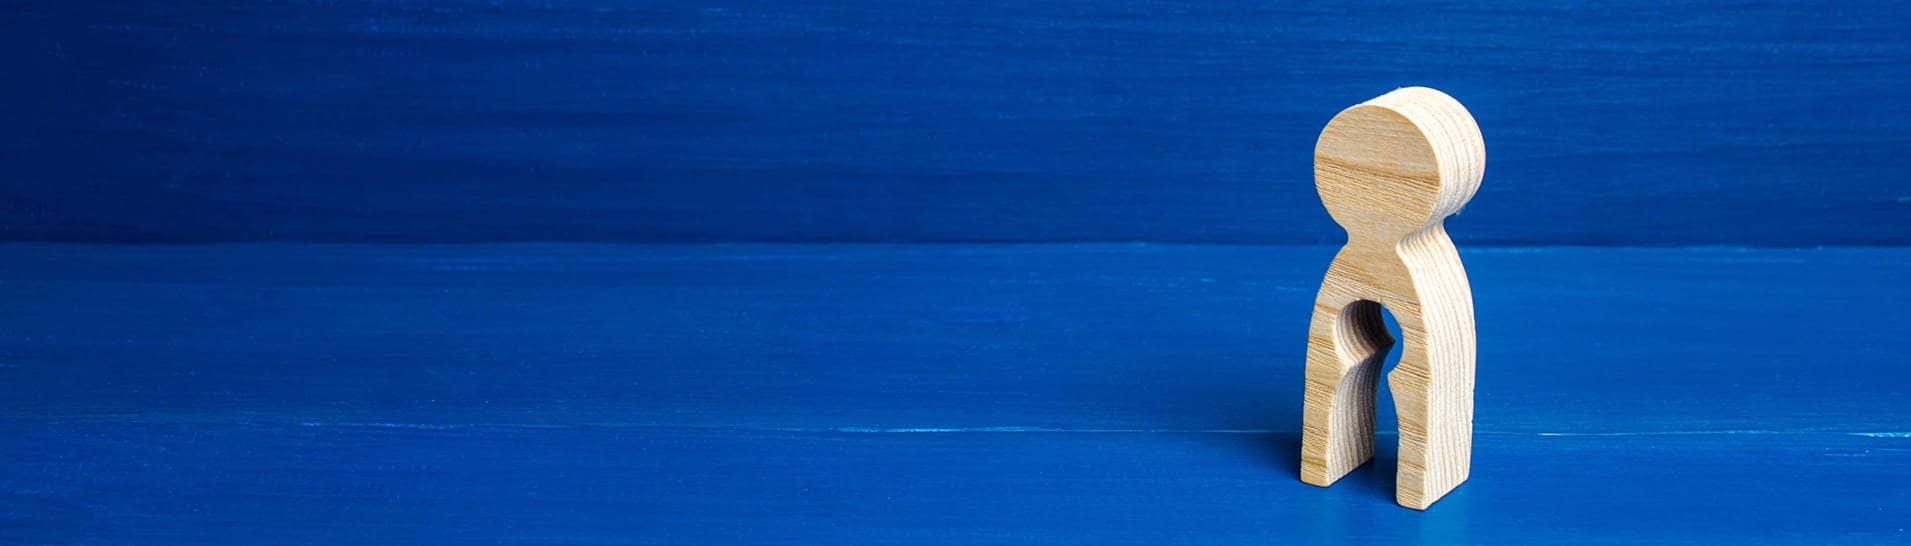 Figur mit ausgestanzter Form eines Kindes vor blauem Hintergrund (Foto: IMAGO, IMAGO / YAY Images)